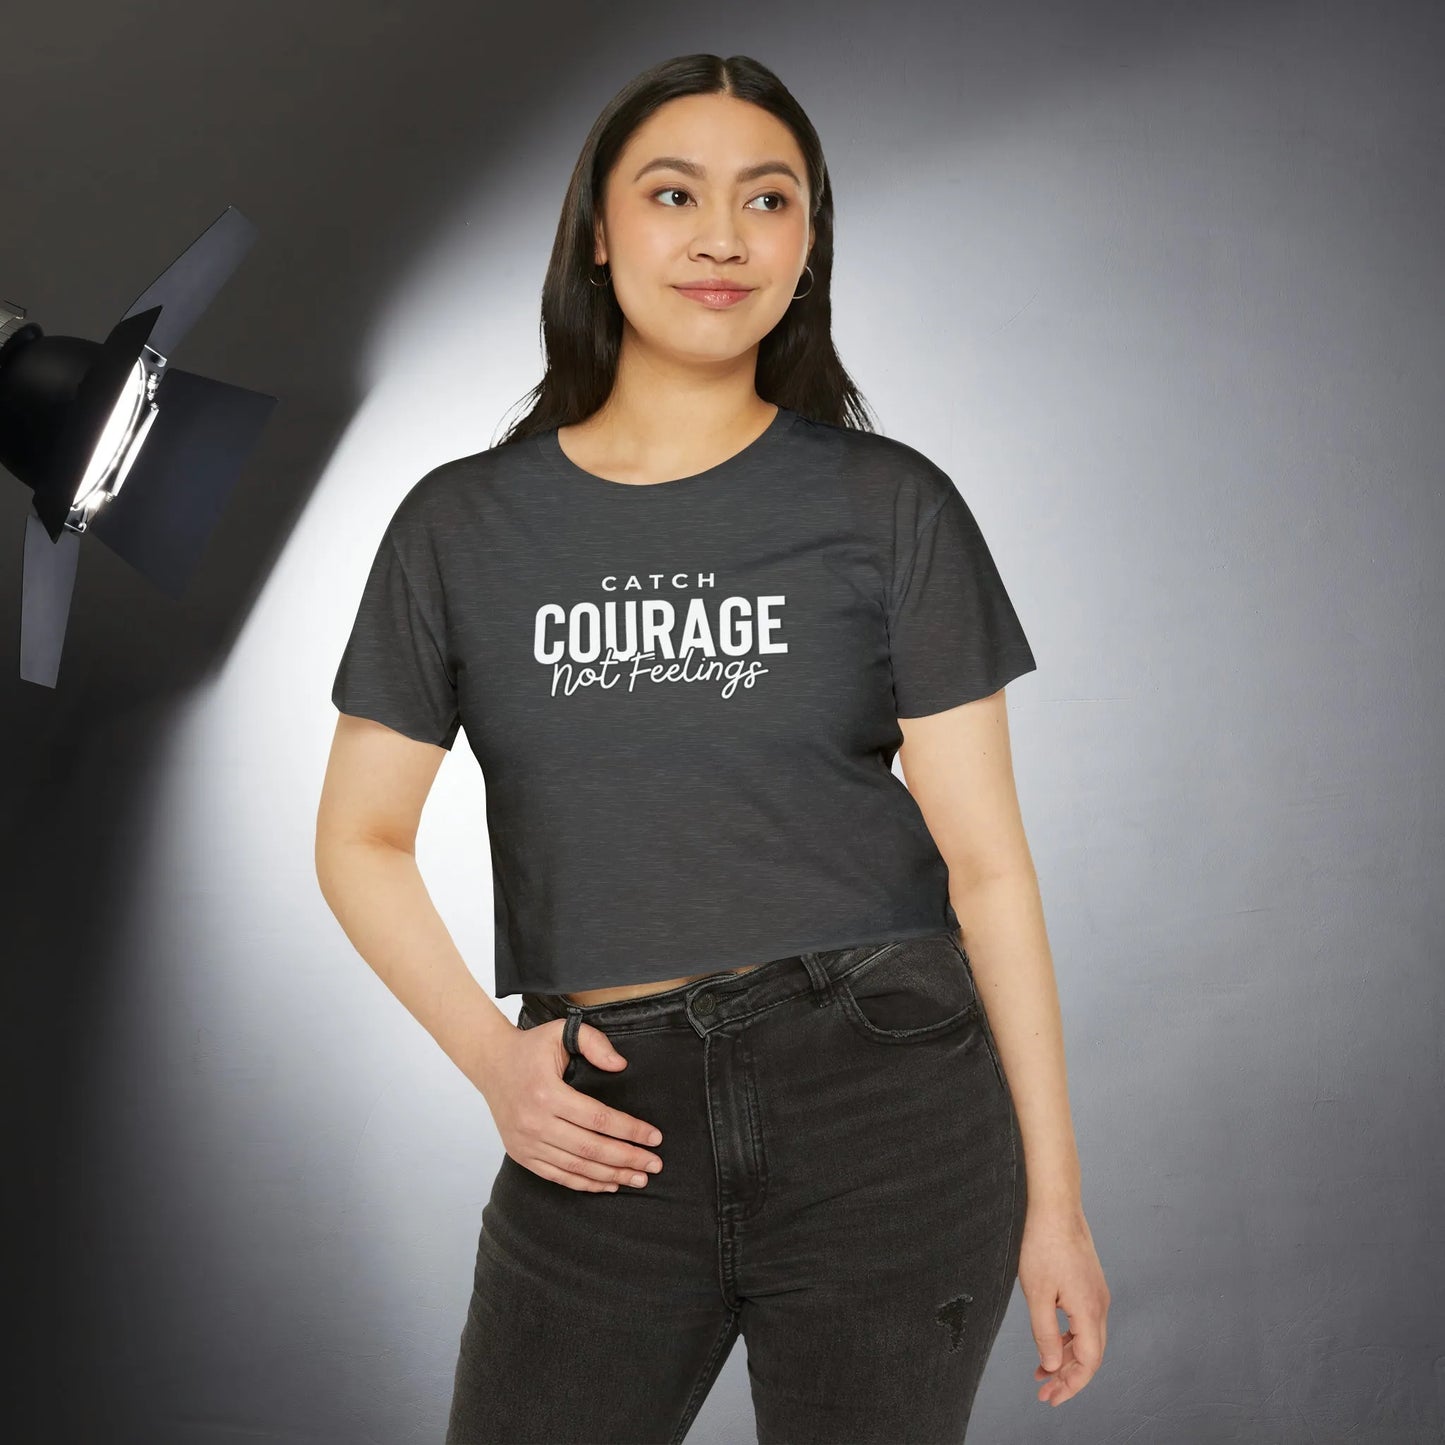 Catch Courage Not Feelings Crop Top - Trendy Women's Top Charcoal